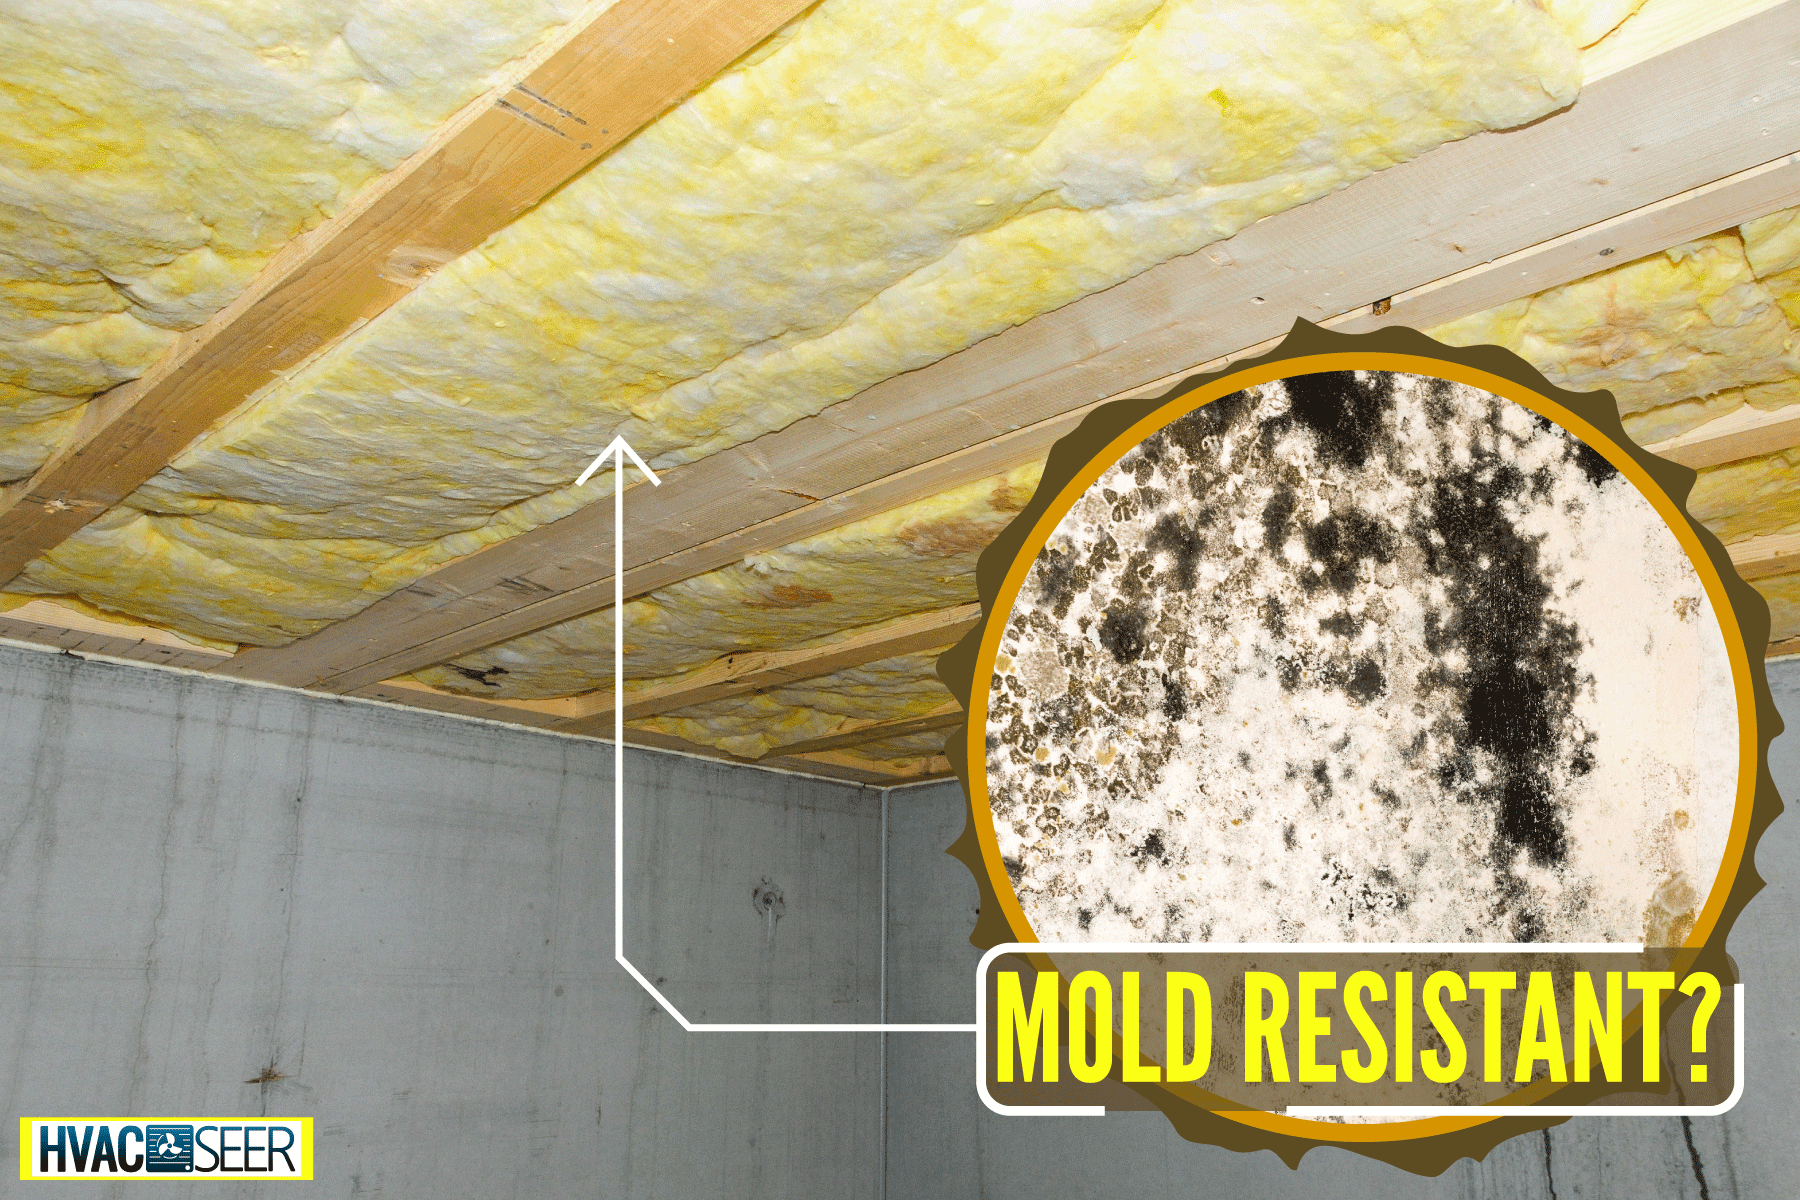 Fiberglass insulation installed on a basement roofing, Is Fiberglass Insulation Mold Resistant?